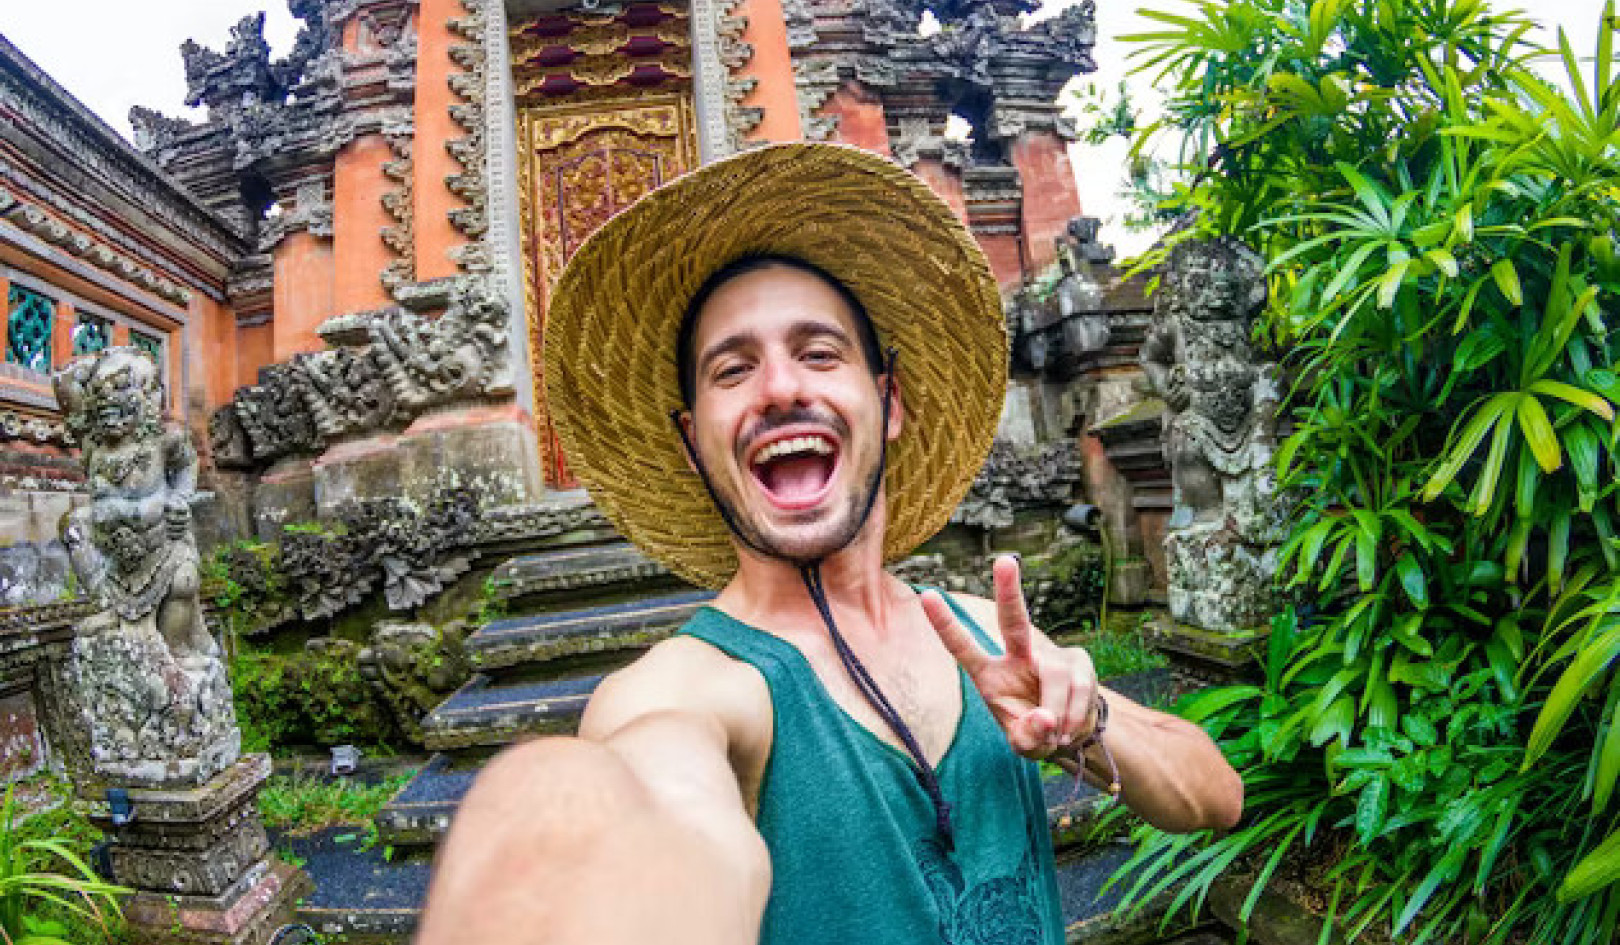 De impact van Instagram op toeristisch gedrag: respectvol reizen